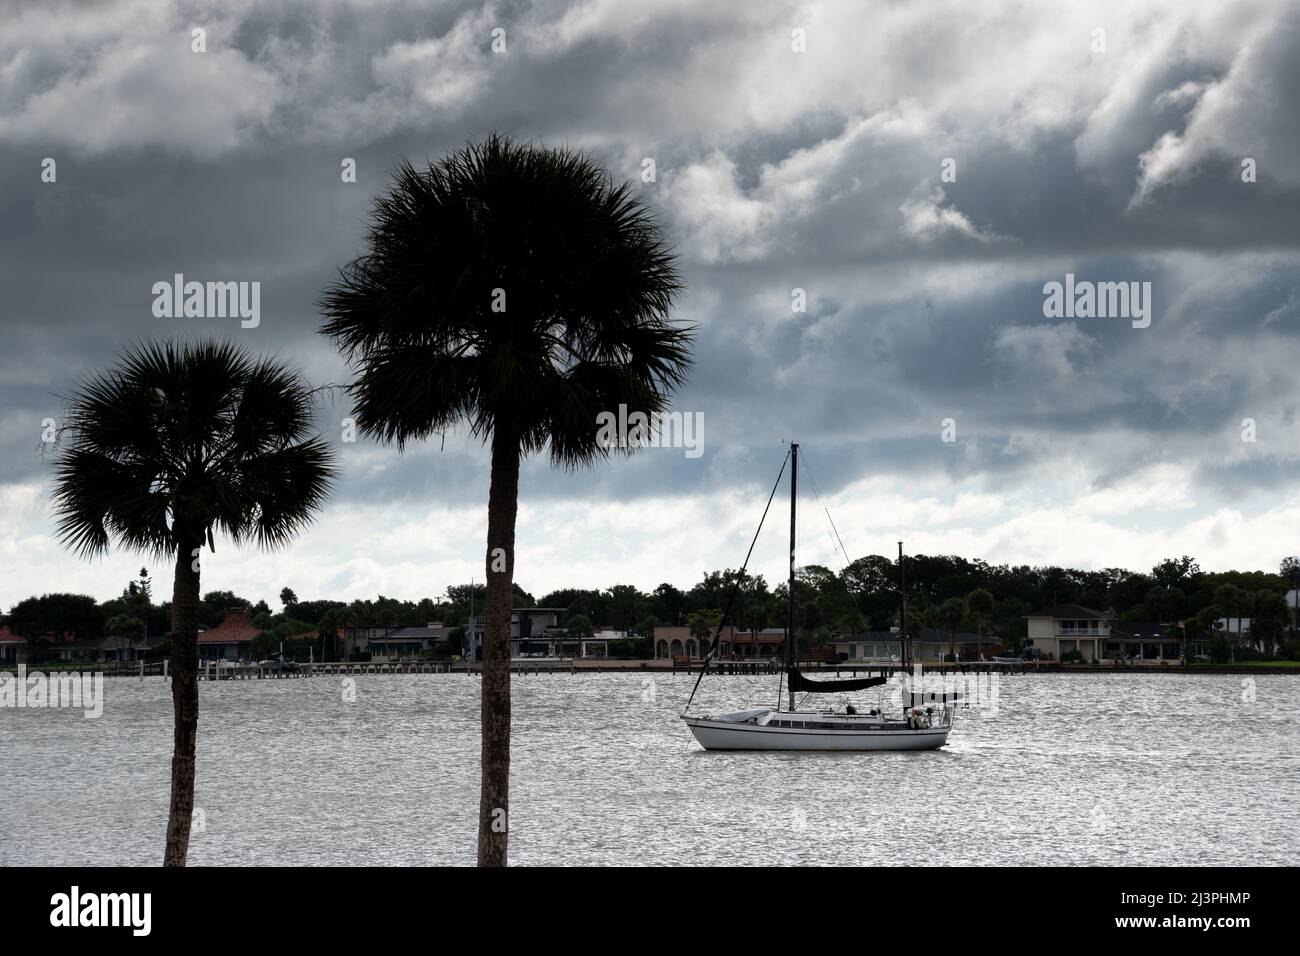 Ein Segelboot im Hafen mit zwei Palmen im Vordergrund und einem einrollenden Sturm Stockfoto